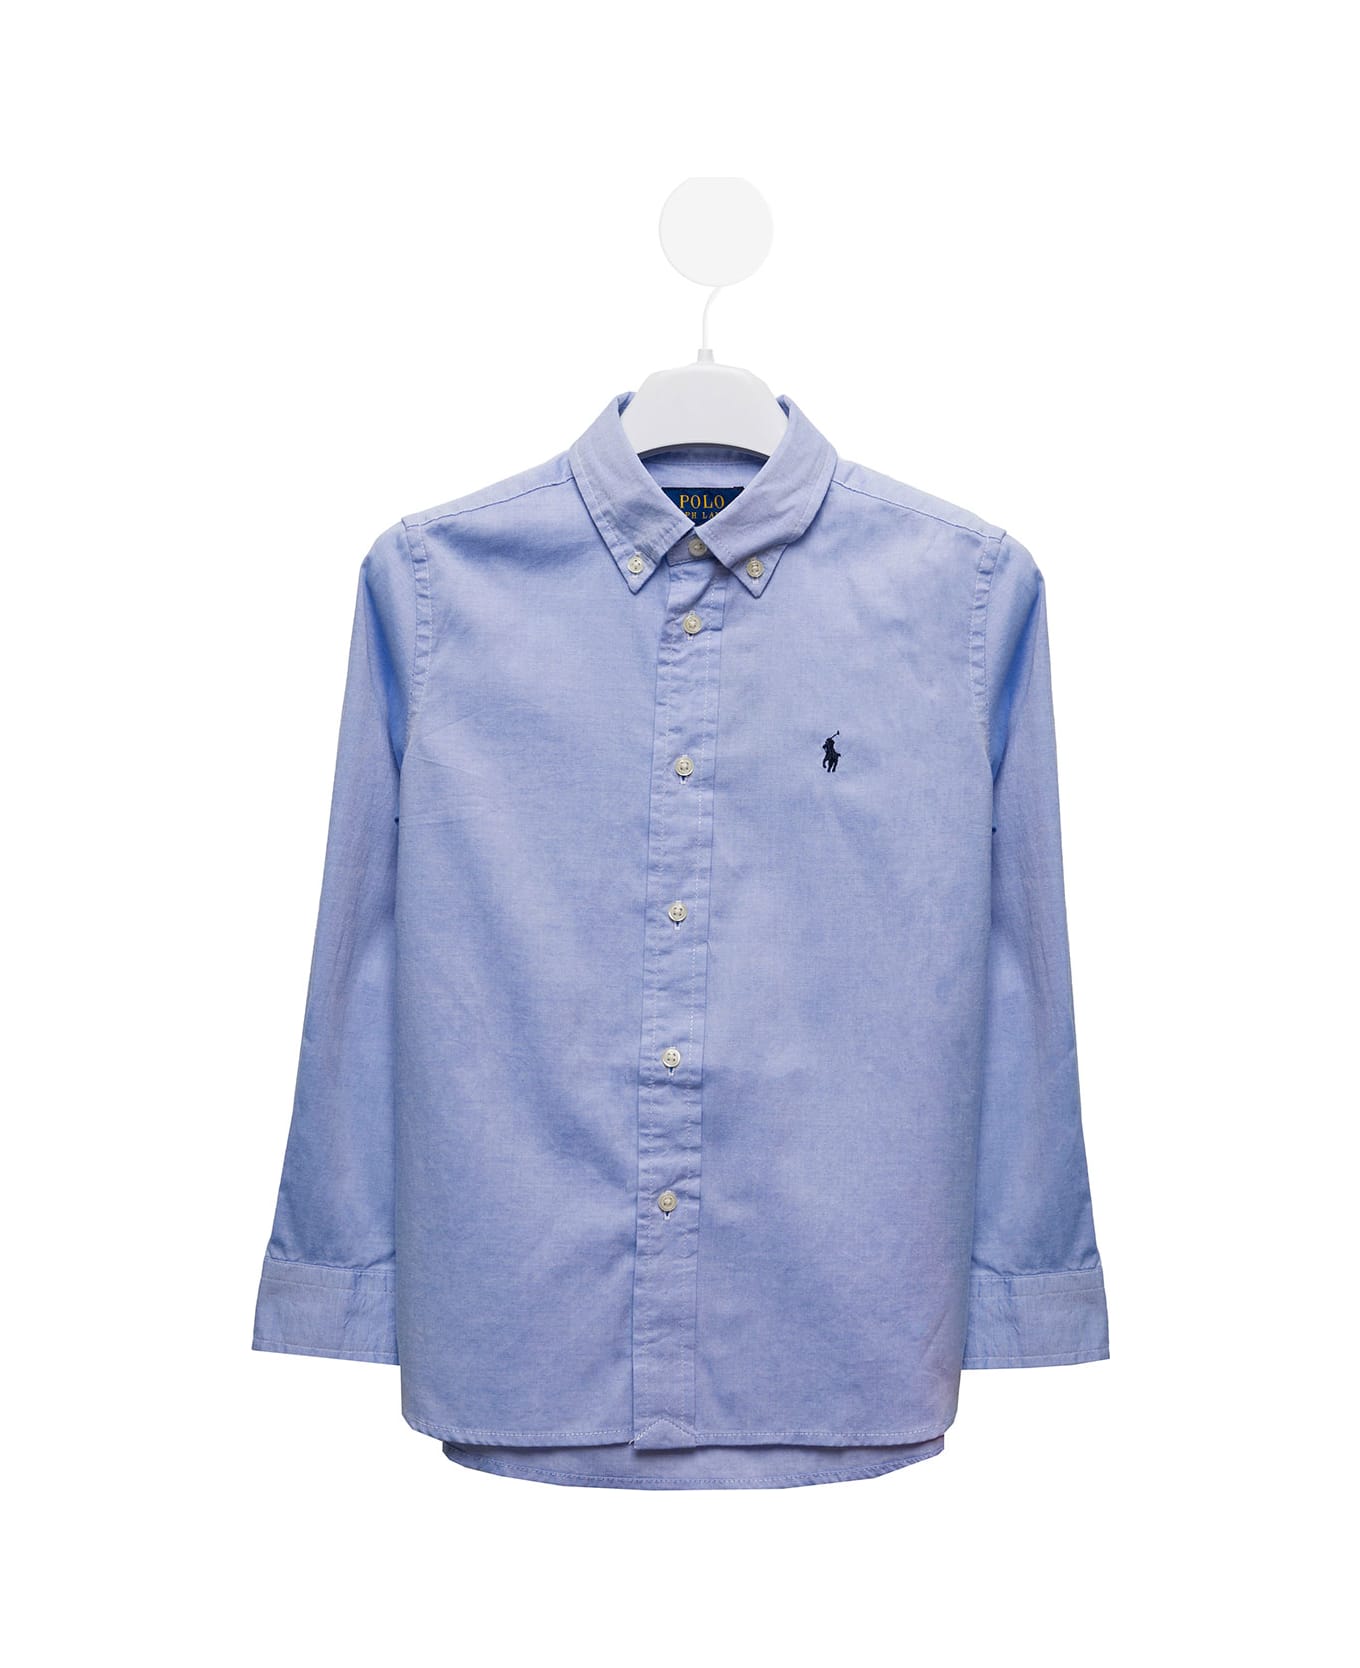 Ralph Lauren Light Blue Cotton Poplin Shirt With Logo Polo Ralph Lauren Kids Boy - Blue